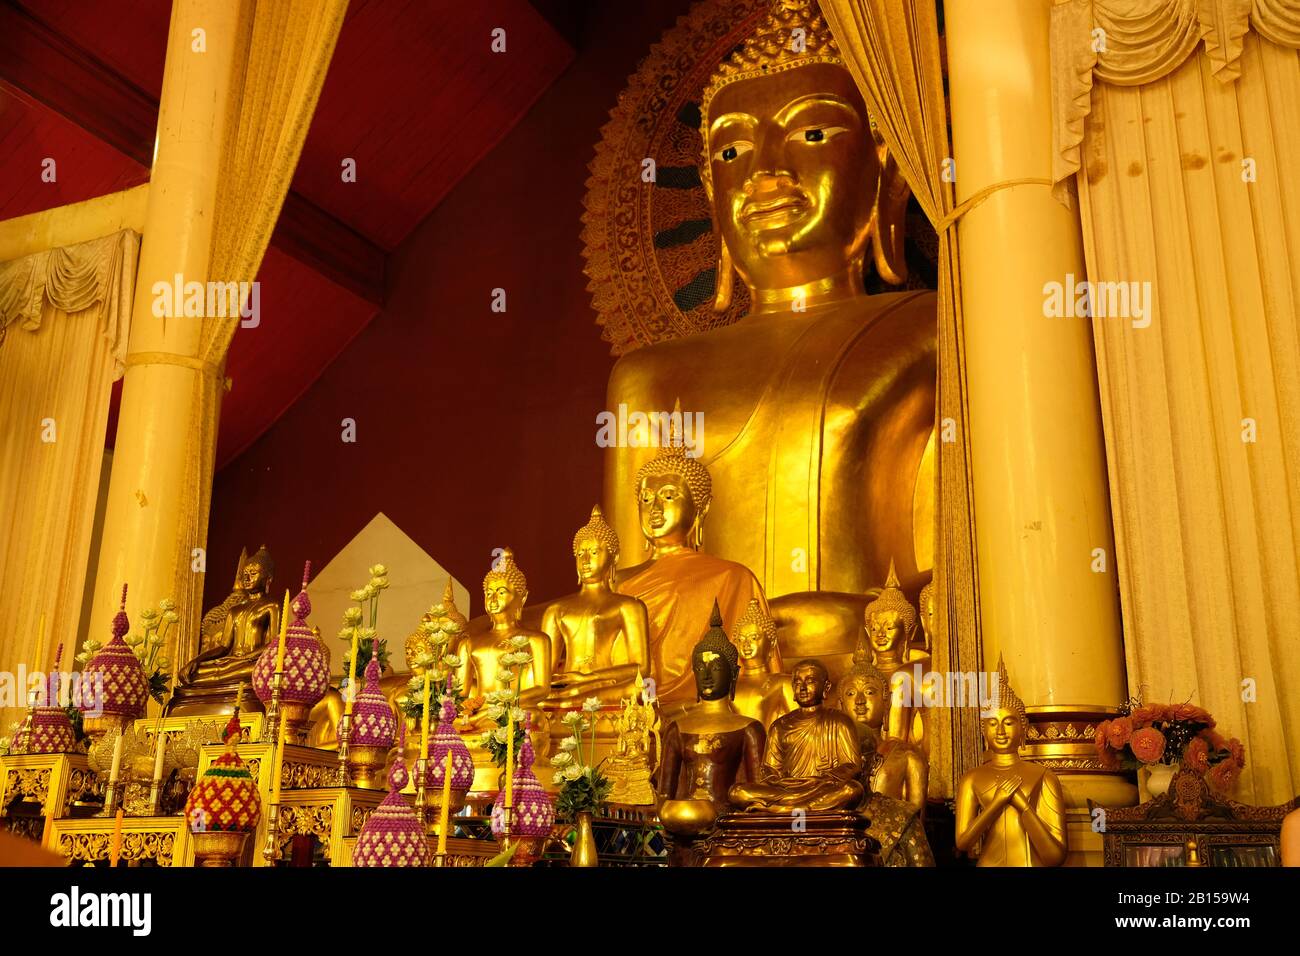 Chiang Mai Thailandia - Tempio Phra Singh - Tempio D'Oro Statue Buddha D'Oro Foto Stock